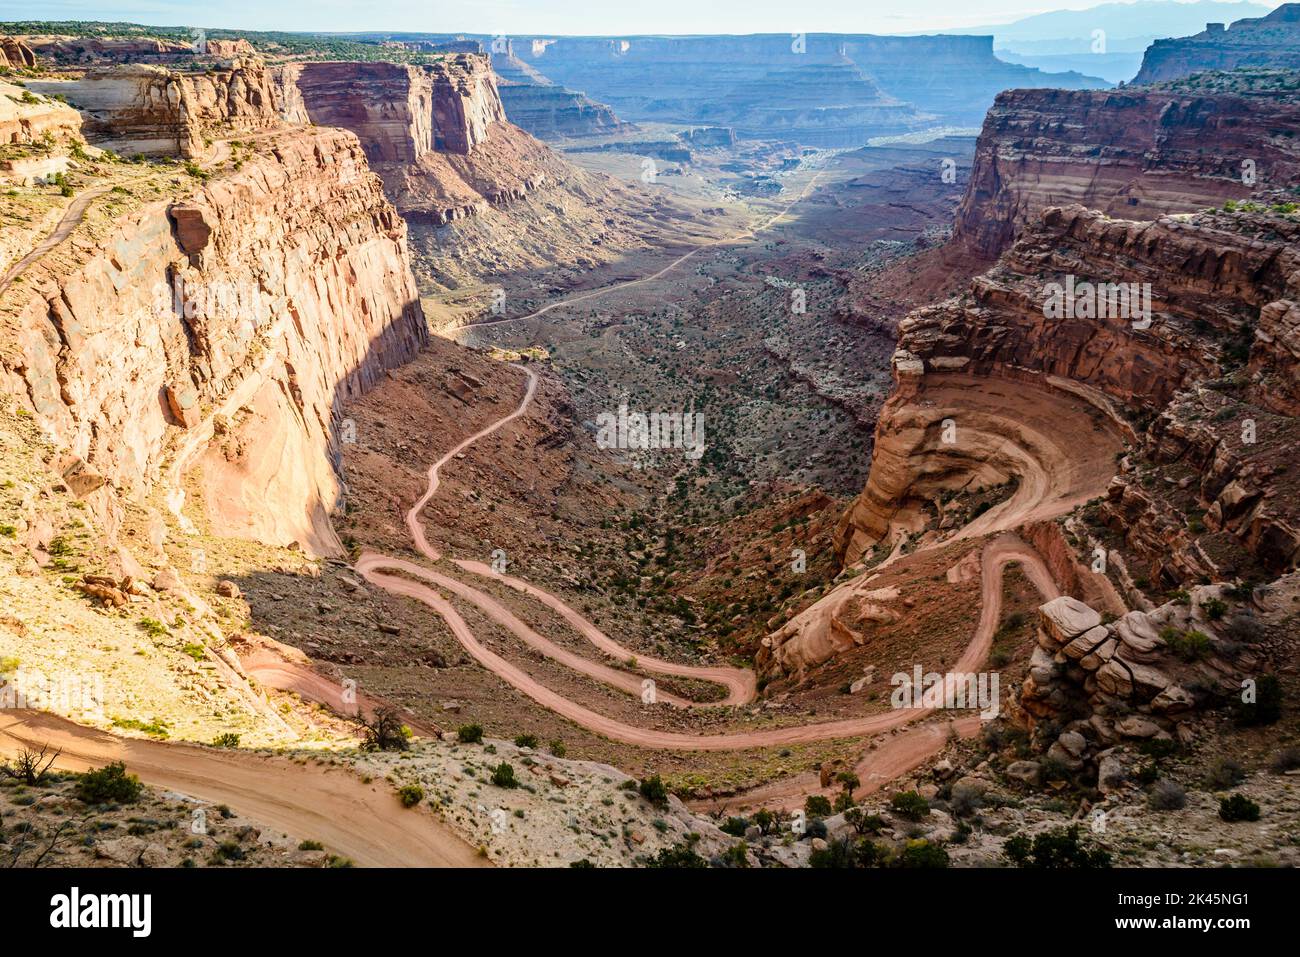 Parc national de Canyonlands, vue sur un chemin en zigzag depuis le fond du canyon jusqu'à la colline escarpée. Banque D'Images